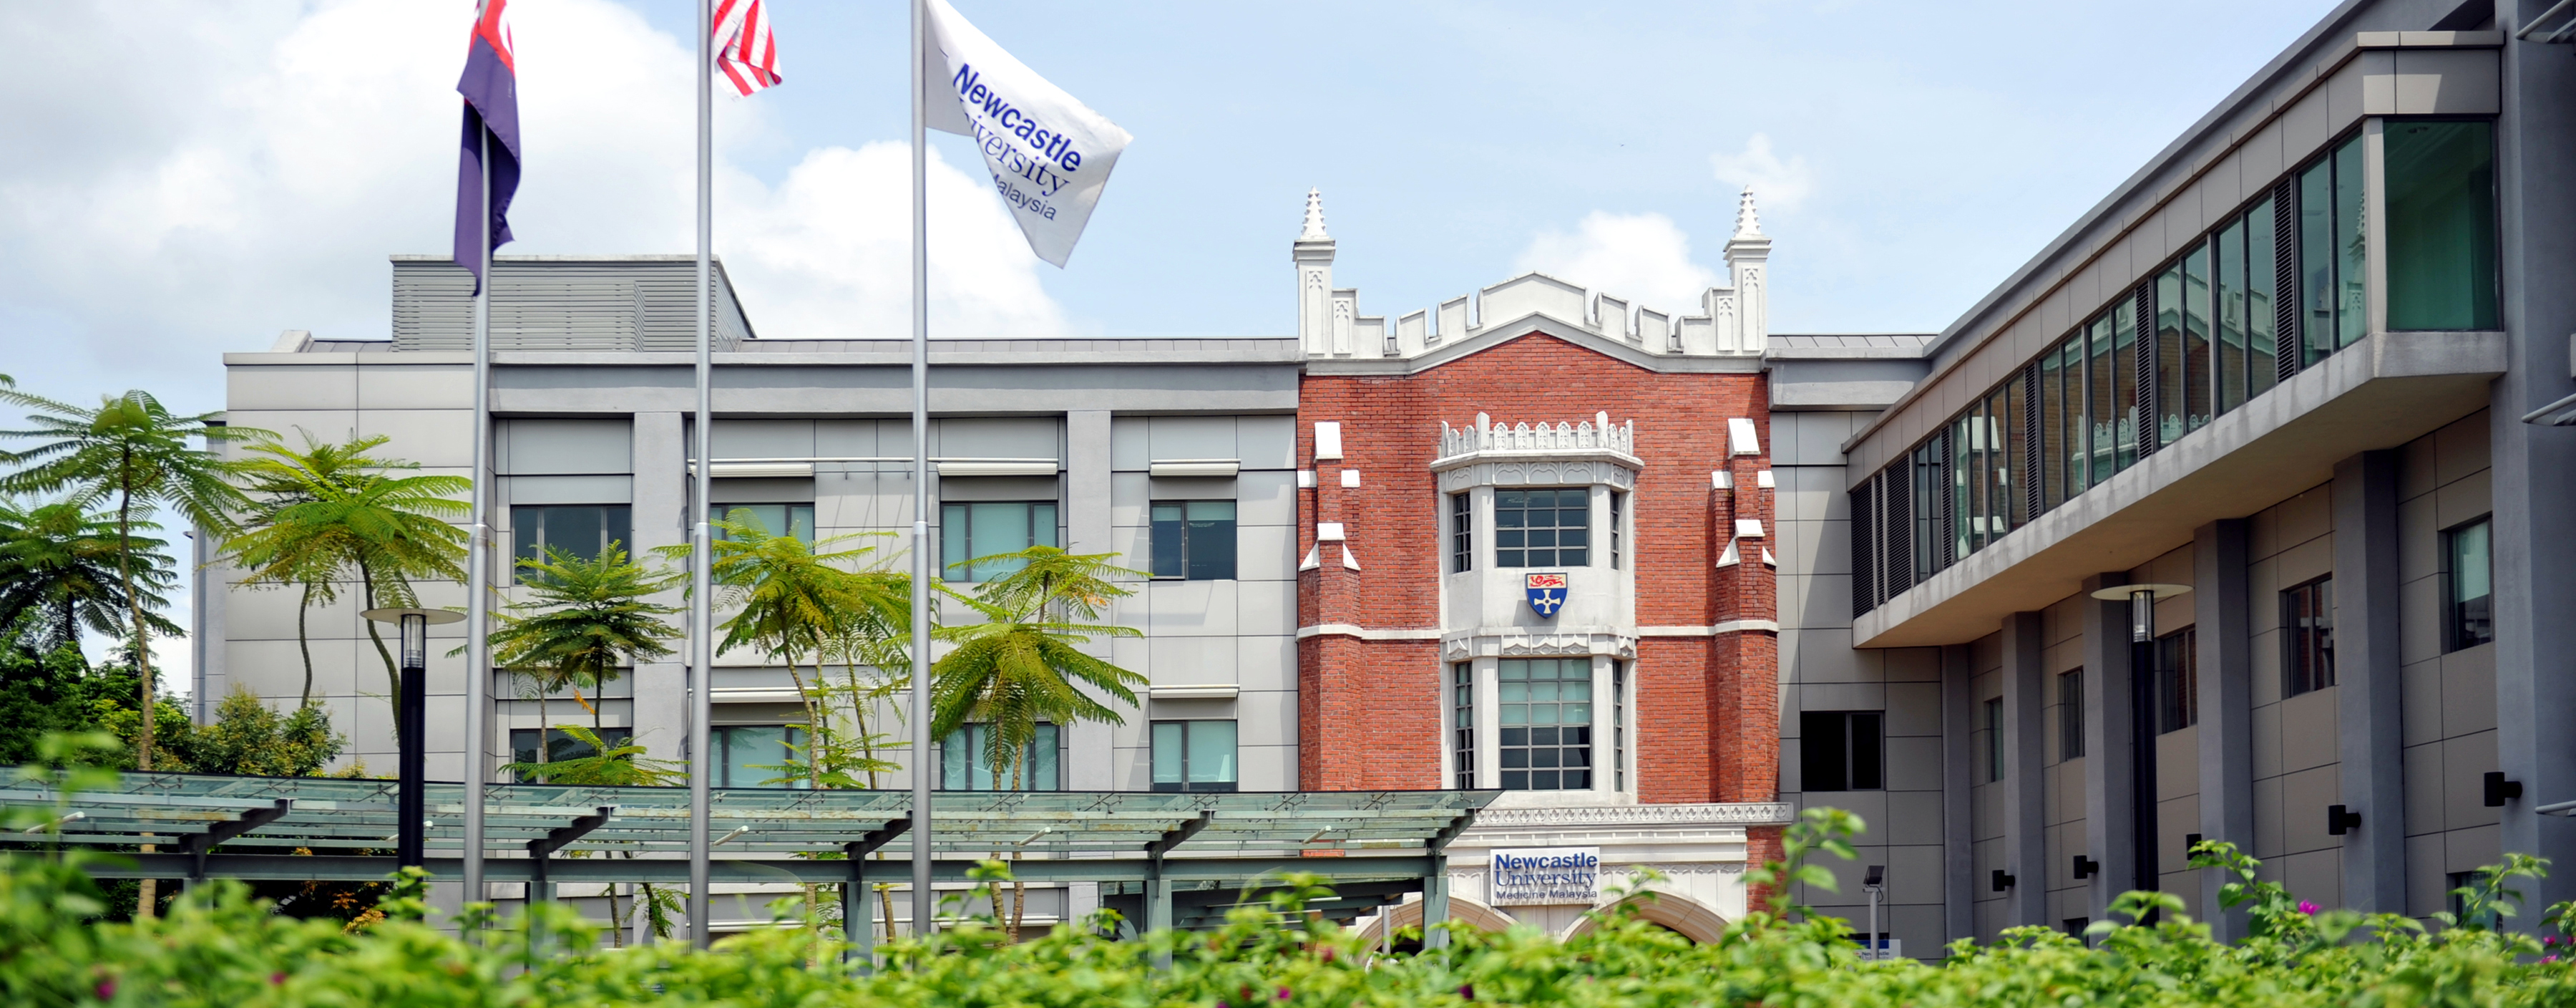 Malaysia university